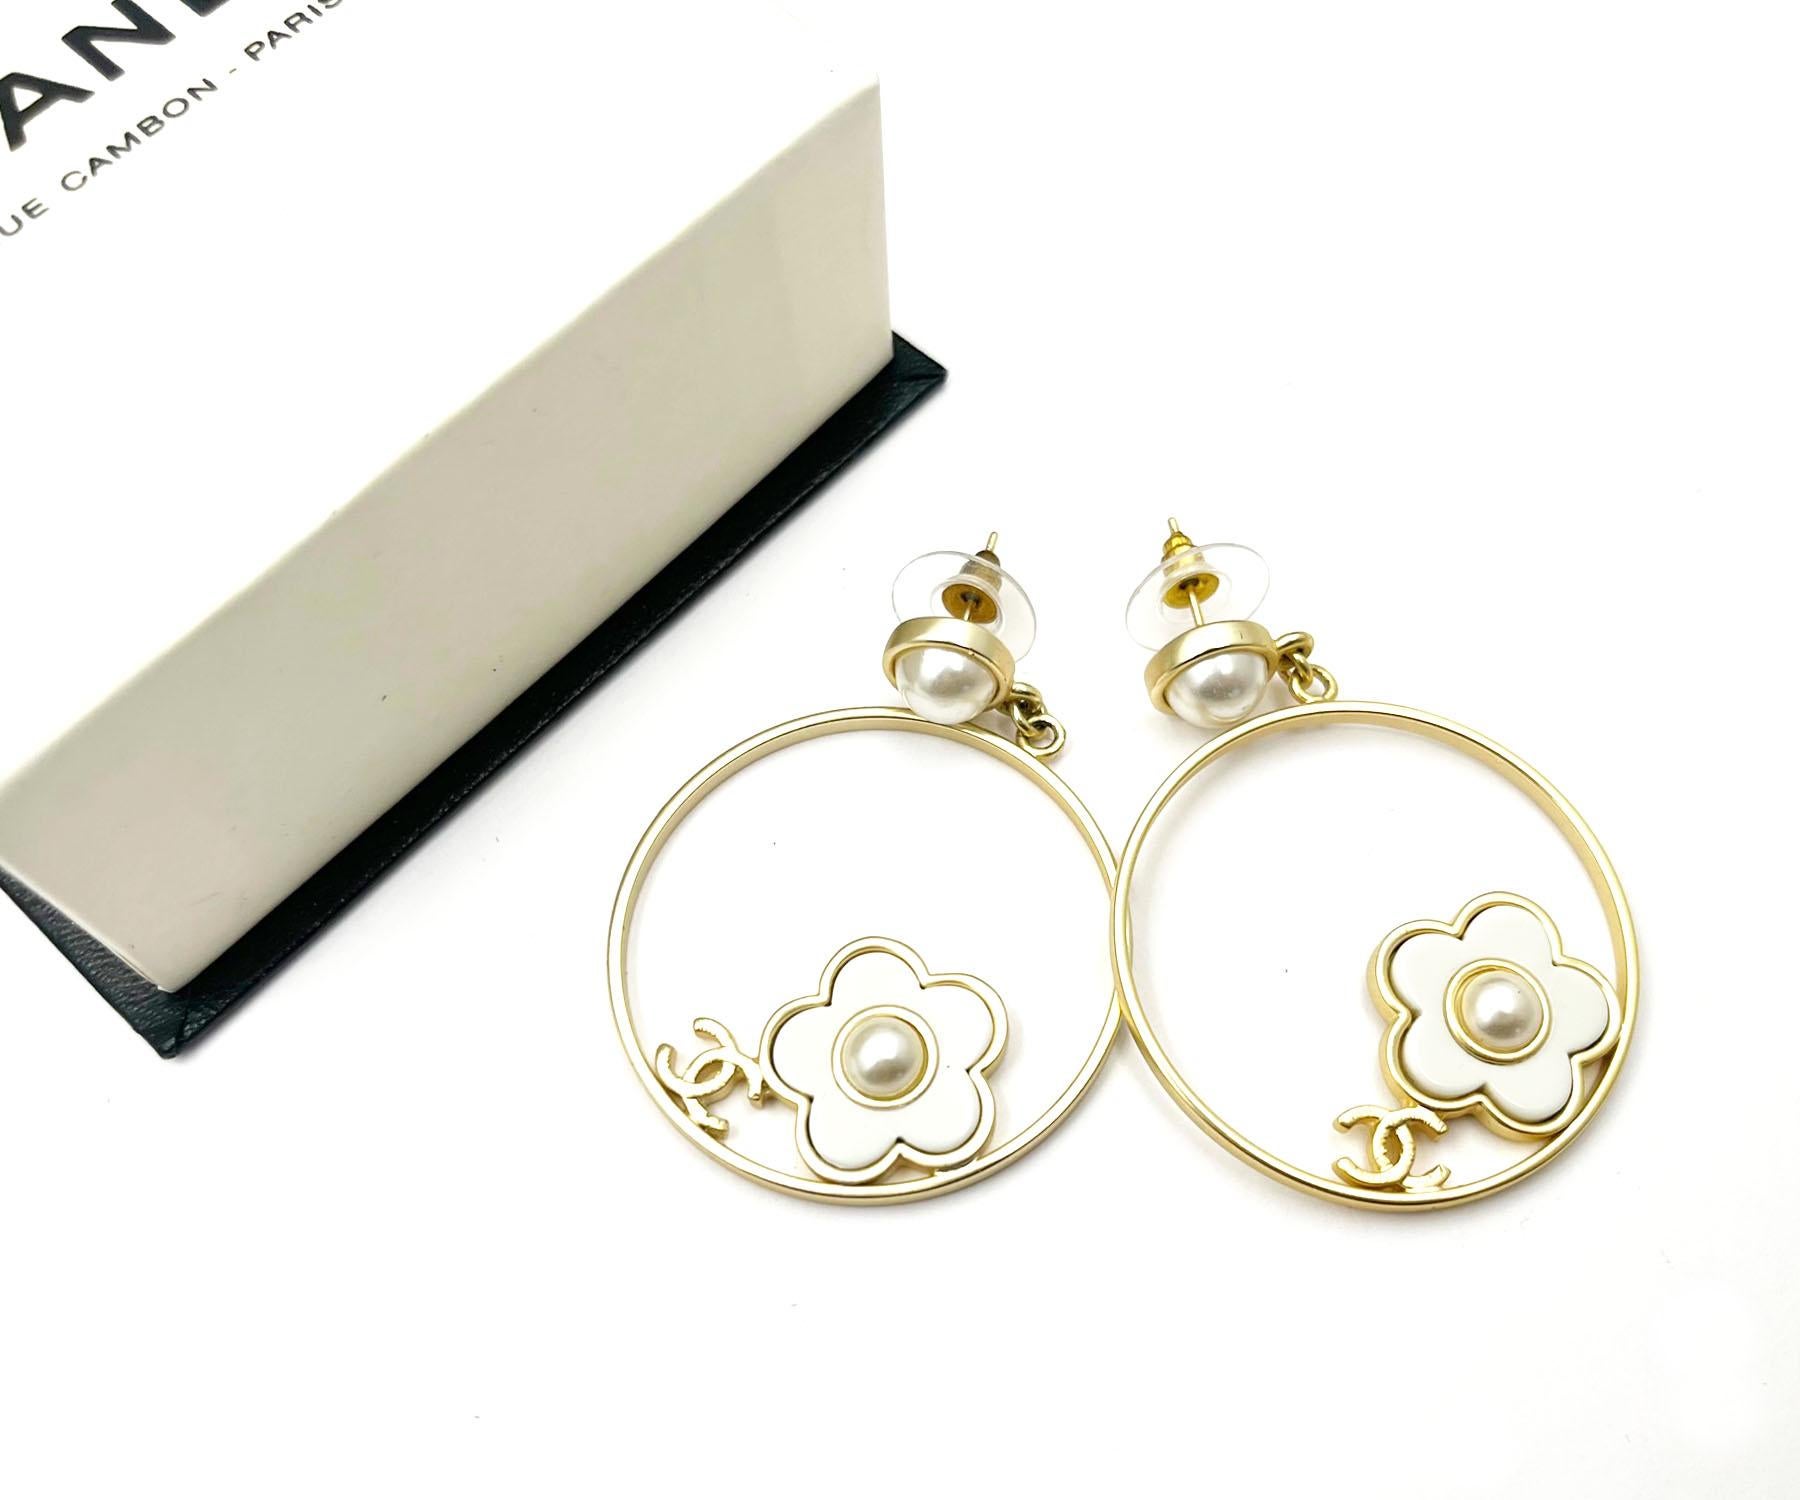 Chanel Iconic Gold CC Weißer runder Gänseblümchenring Große durchbrochene Ohrringe

* Markiert 18
* Hergestellt in Frankreich
* Kommt mit dem Originalkarton

-Es ist ungefähr 2,1